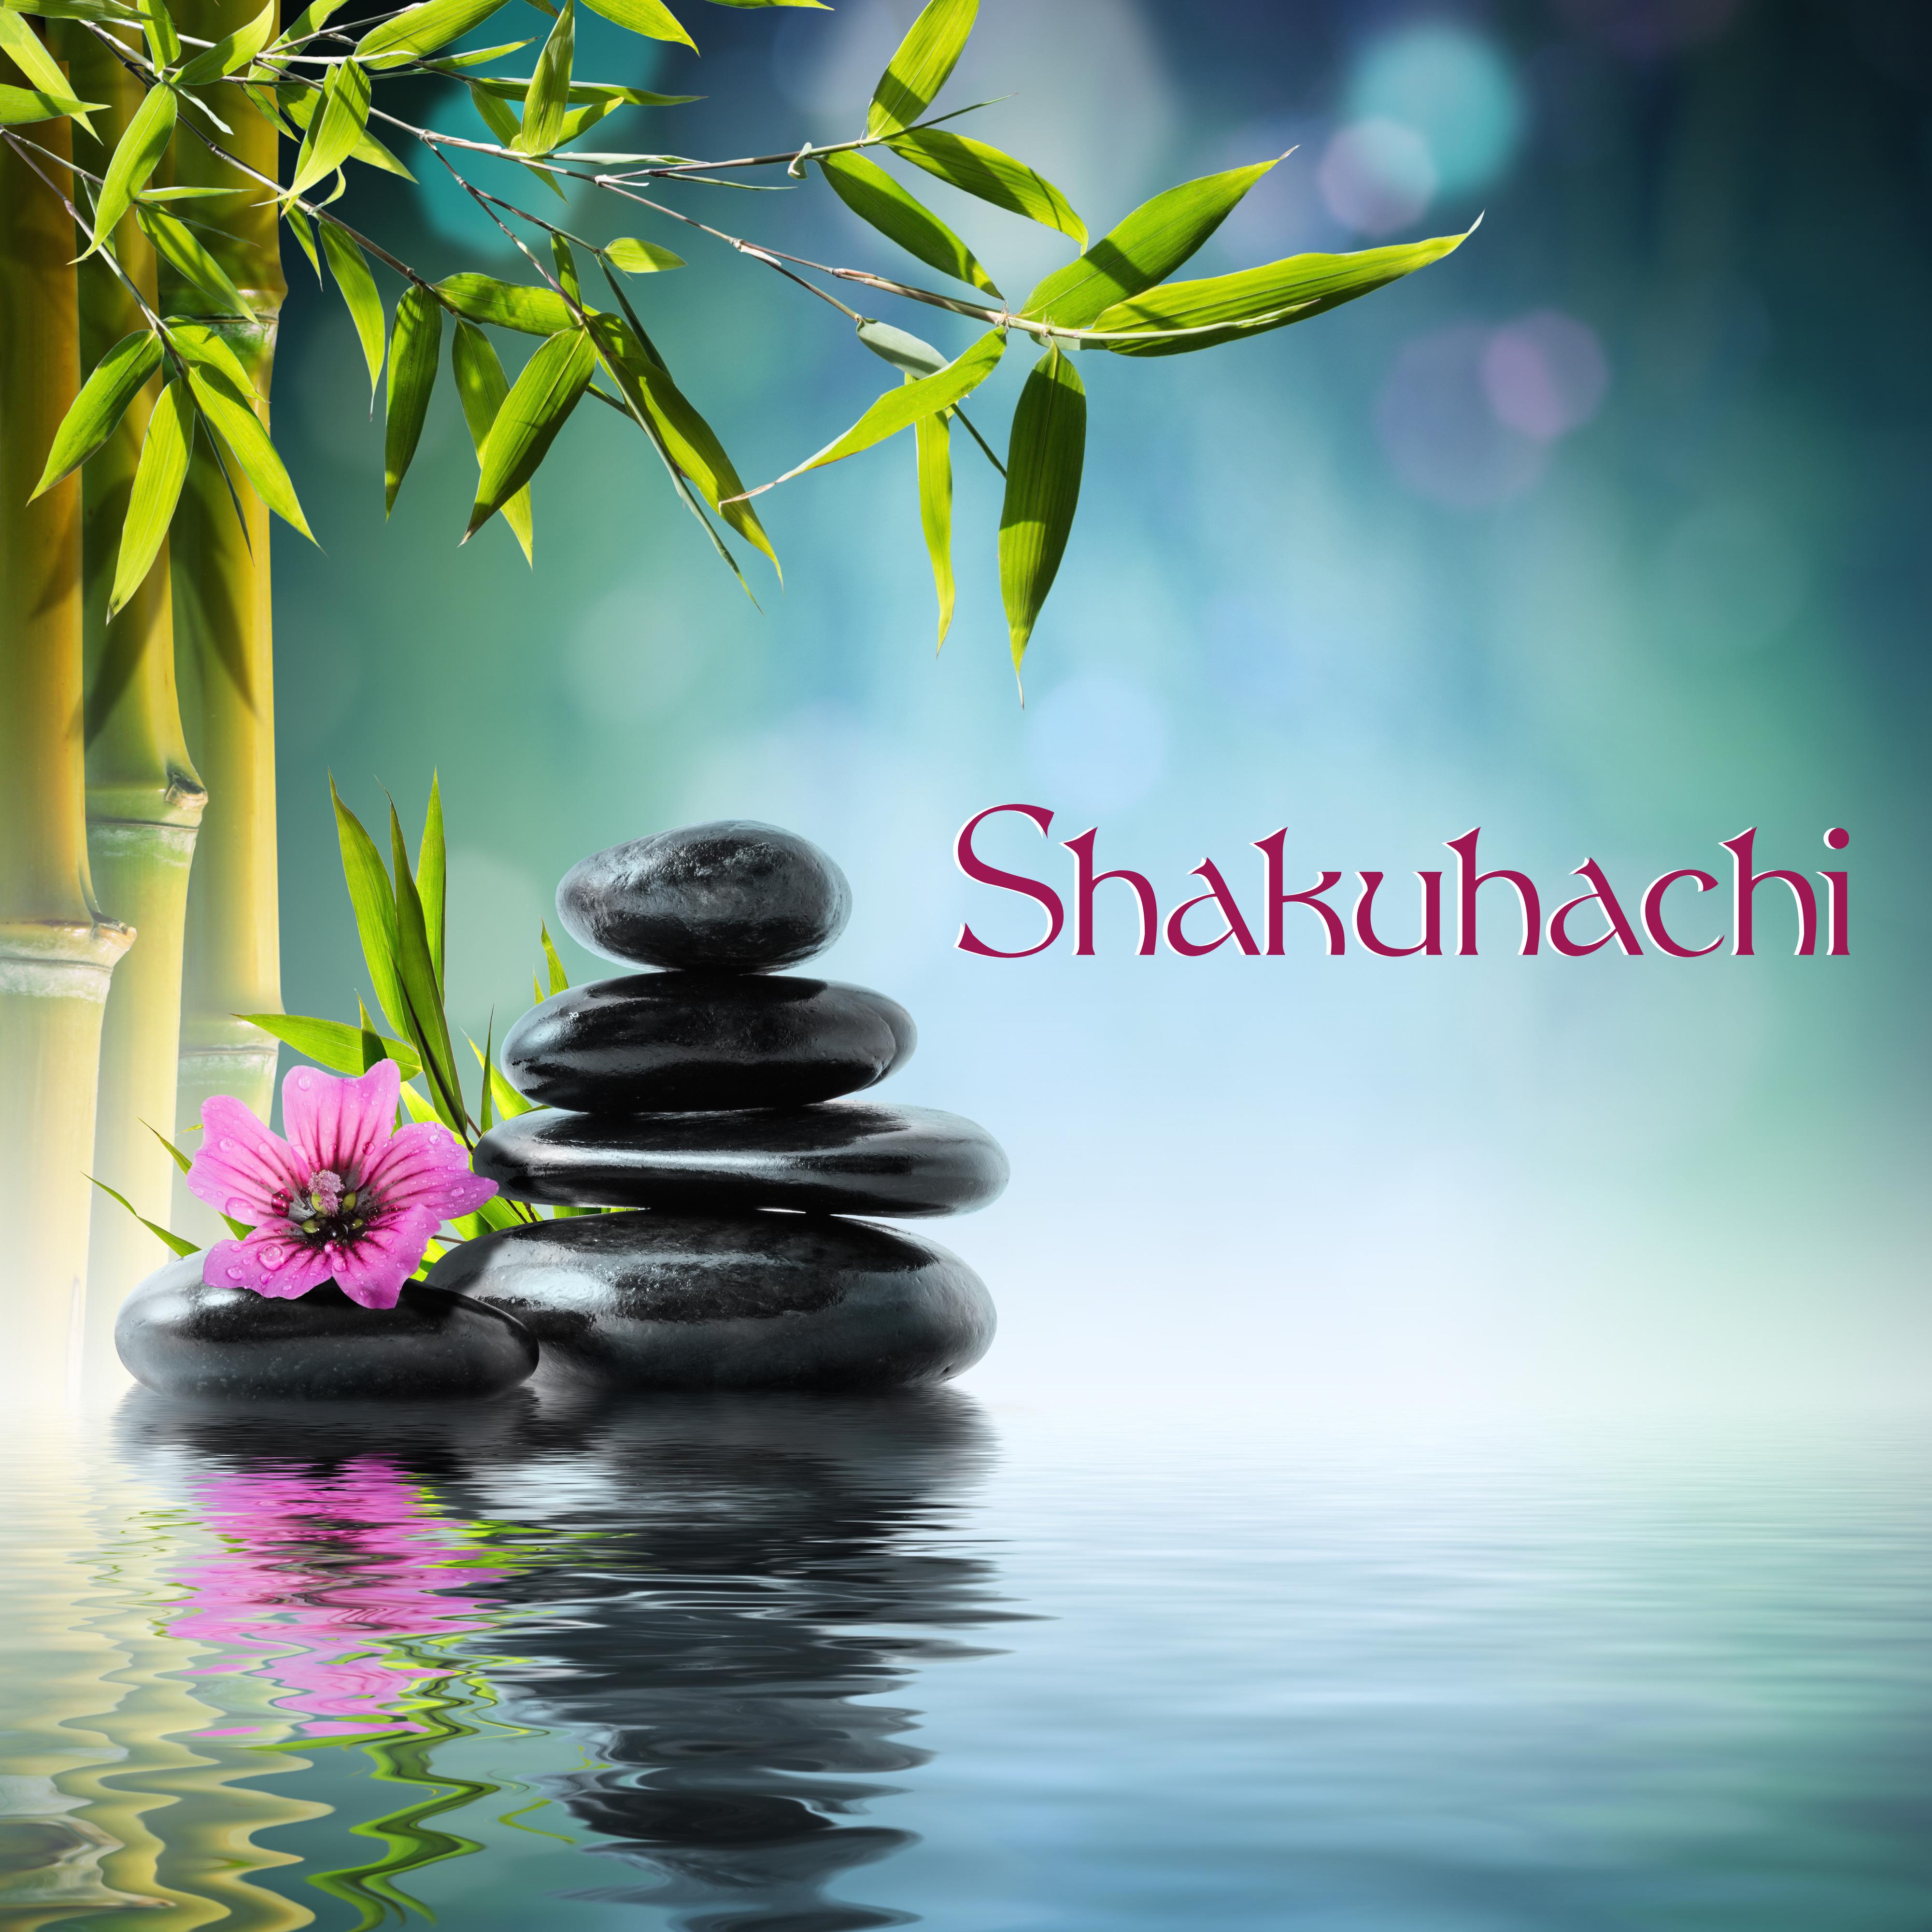 Shakuhachi - Japanese Instrumental Flute Music for Zen Meditation and Mindfulness Breathing Exercises